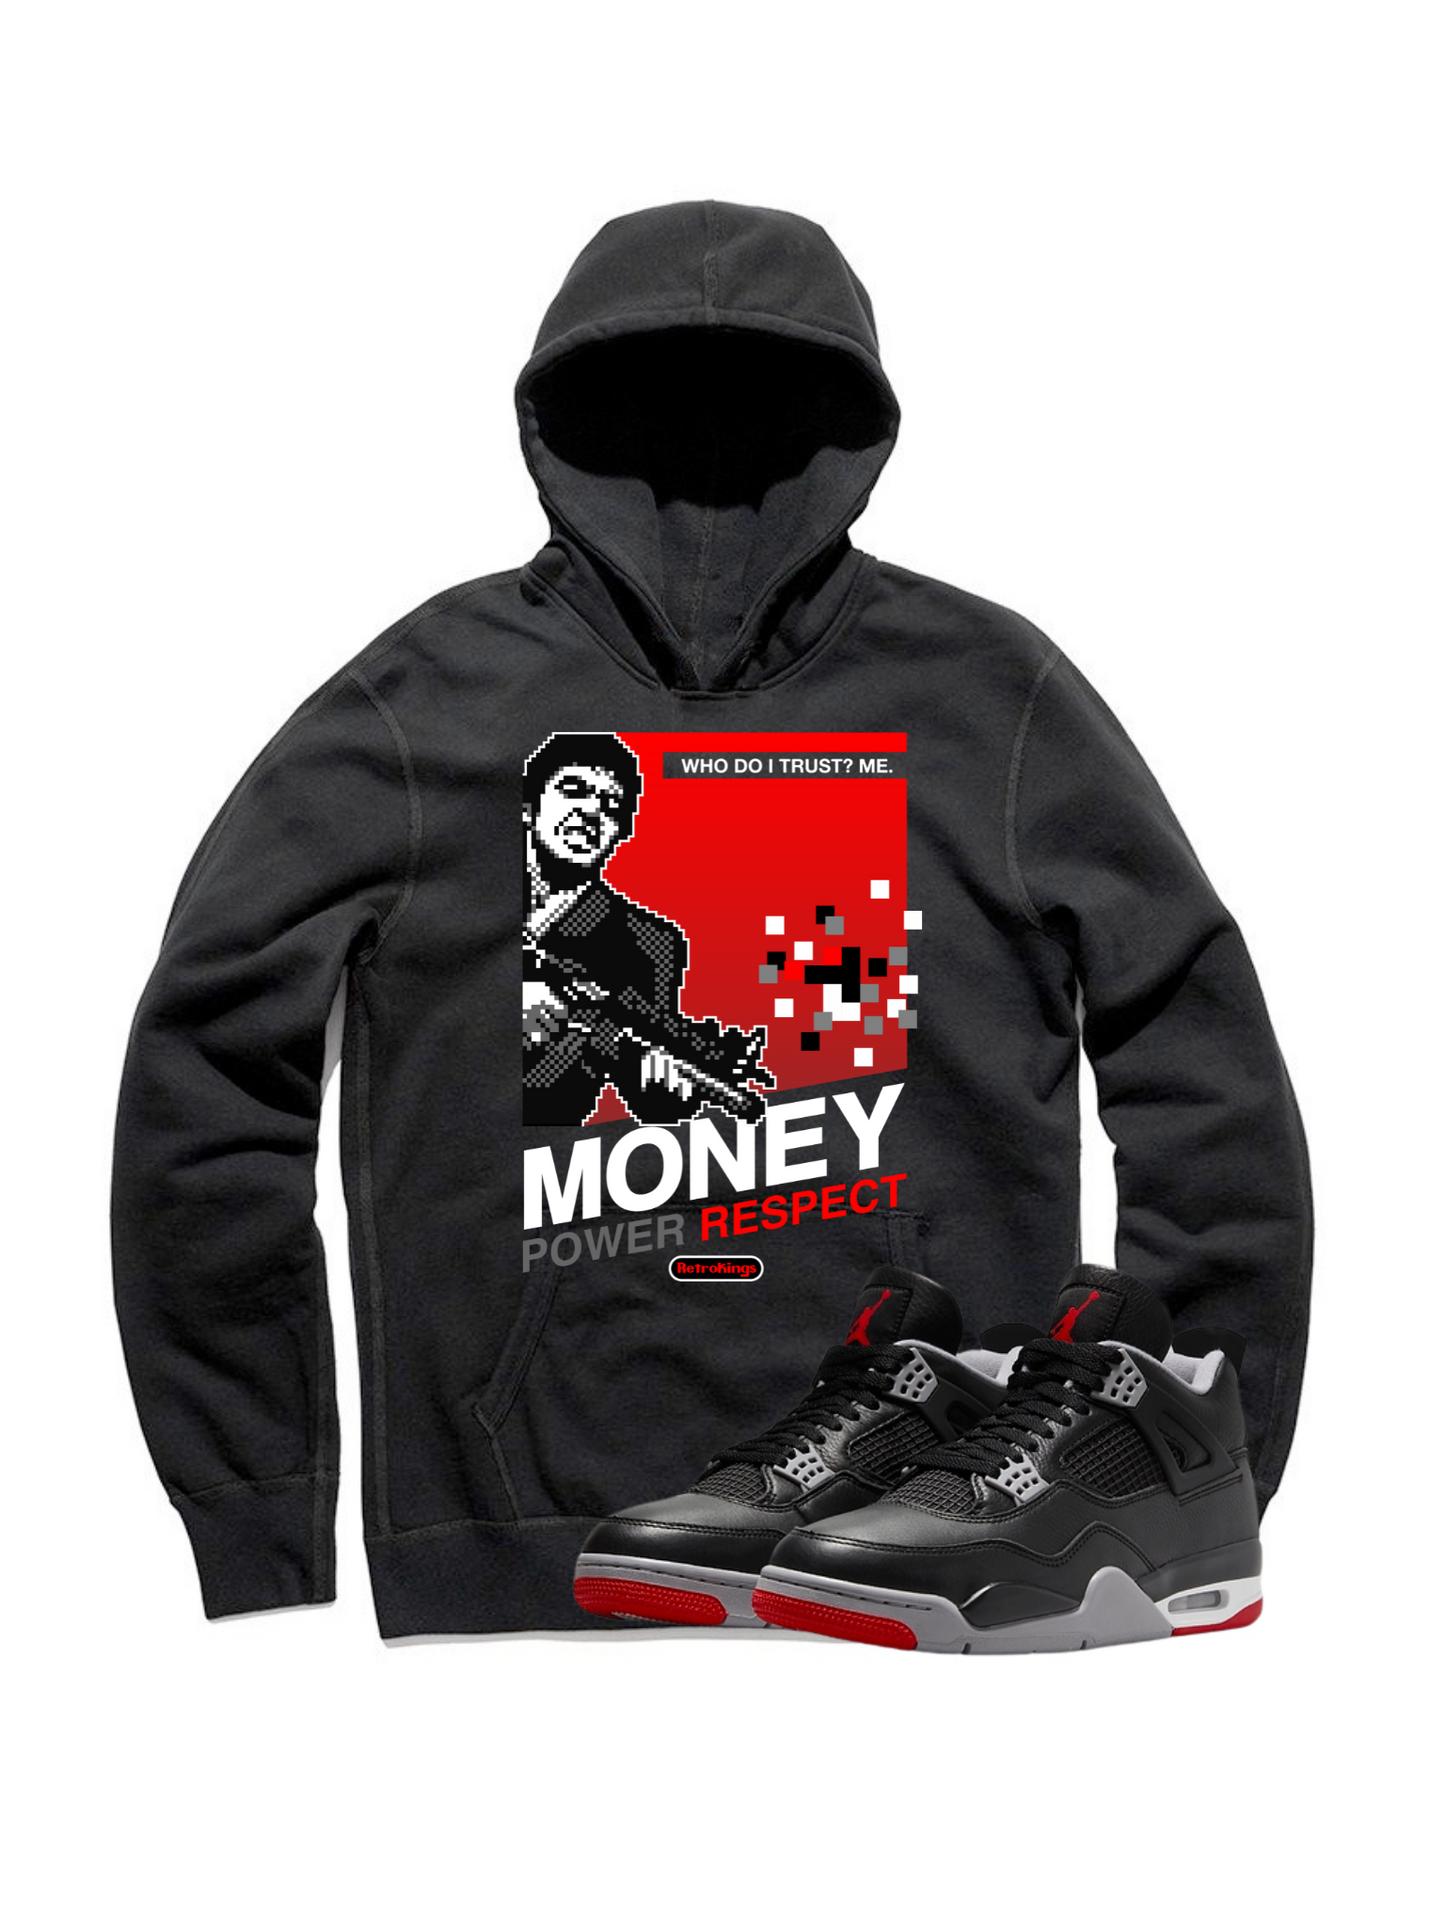 Jordan 4 Reimagined mpr black hoodie-Lacing Up